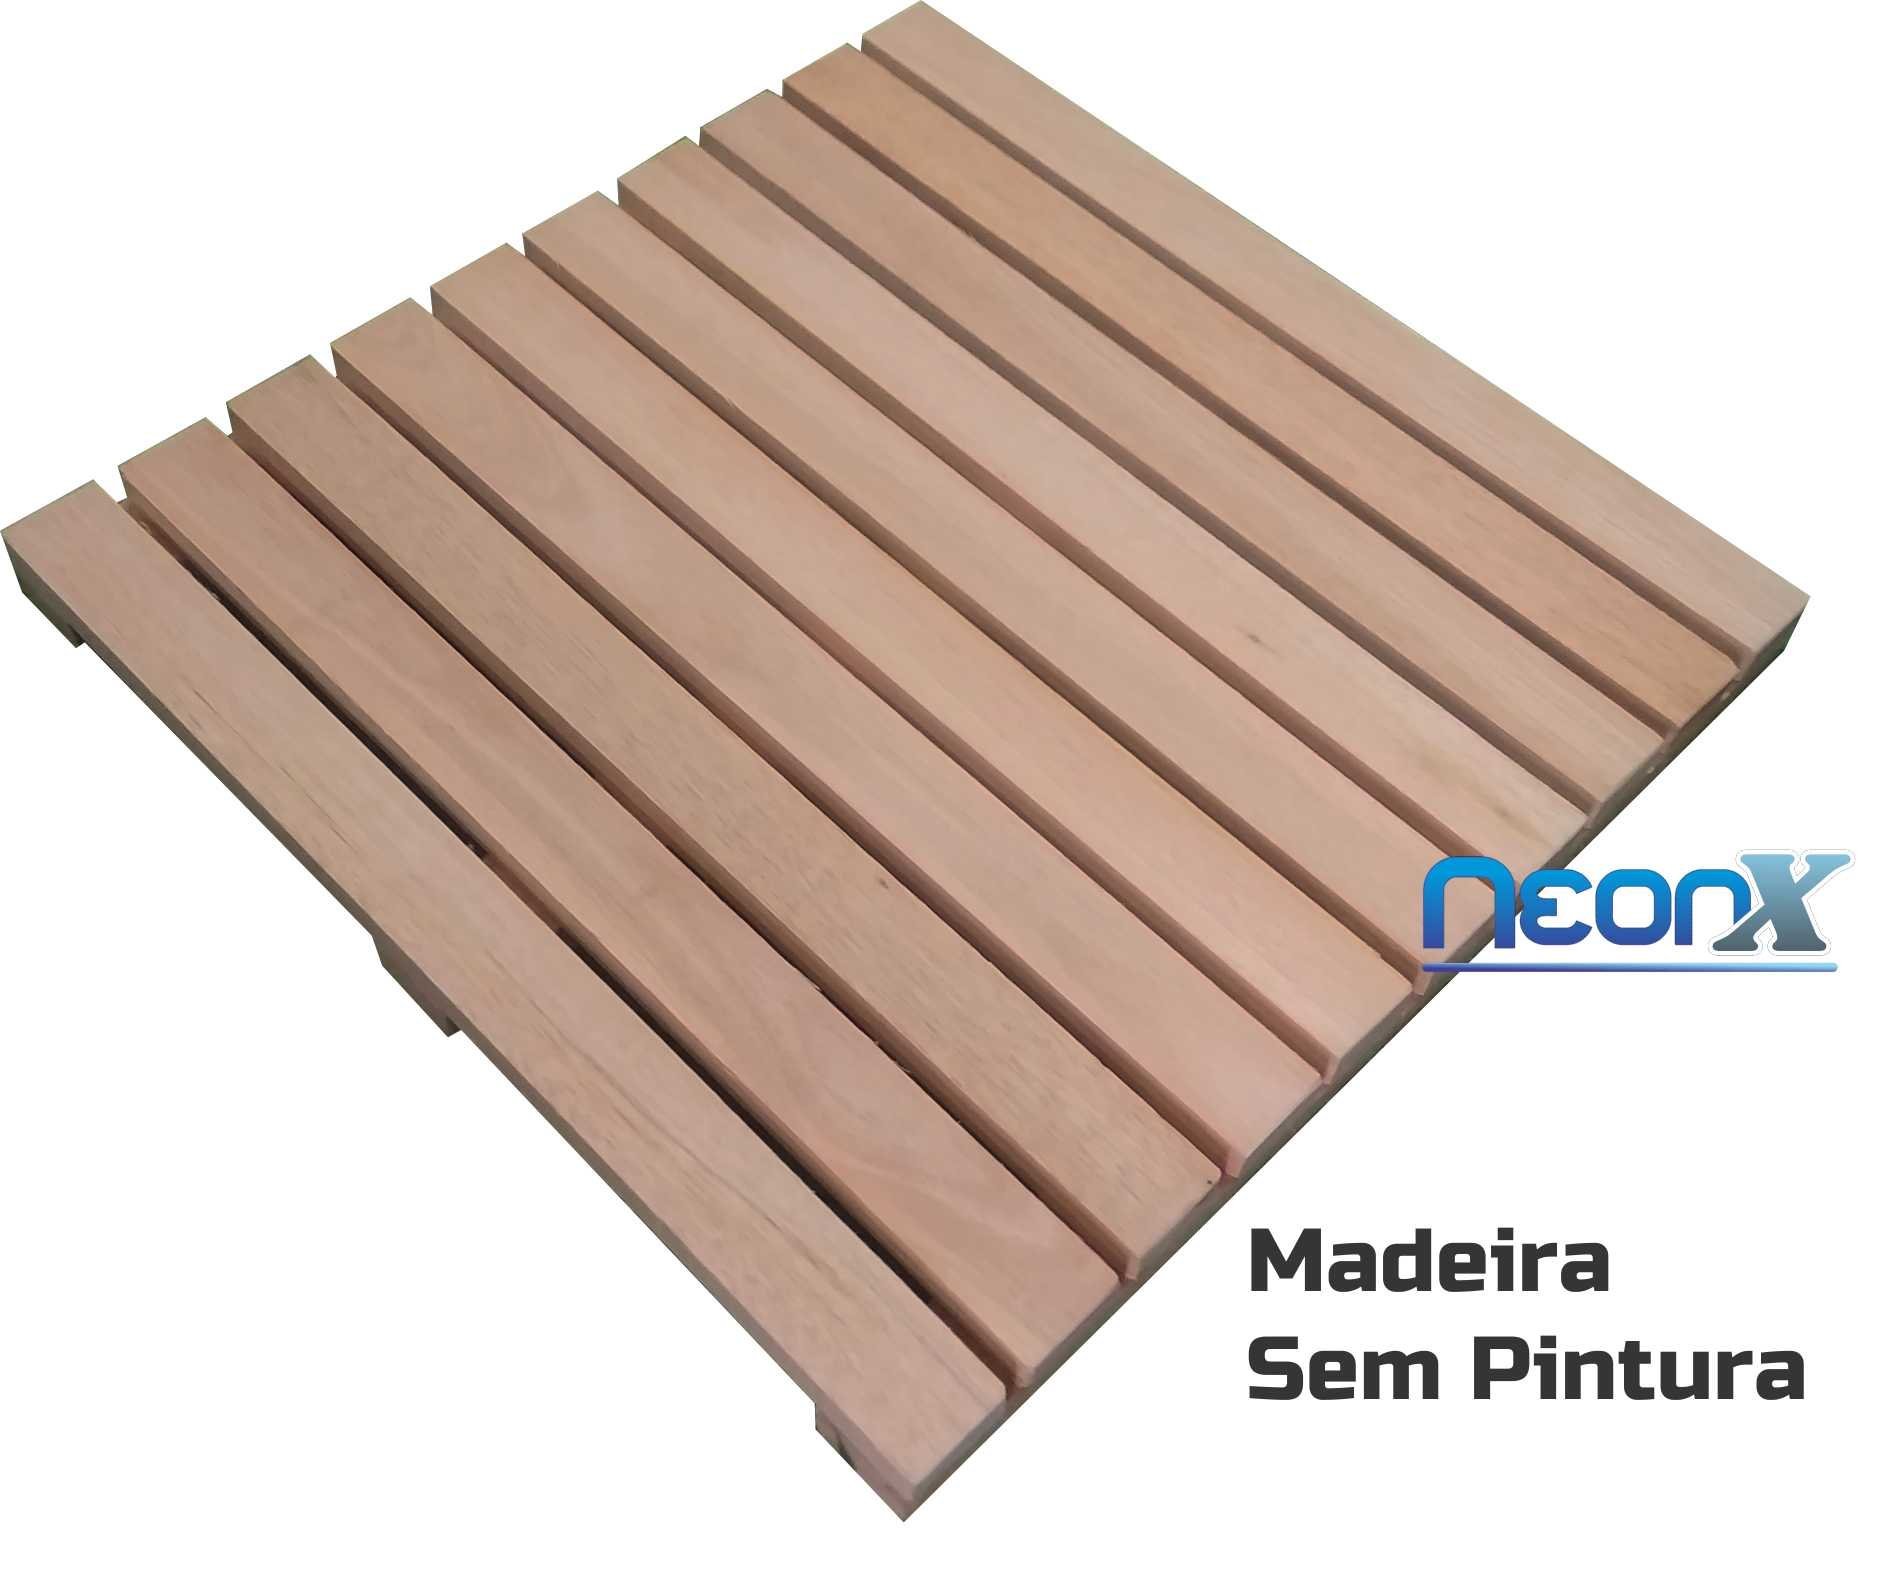 Deck de Madeira Modular 50x50 Cm sem Pintura Neonx - 11